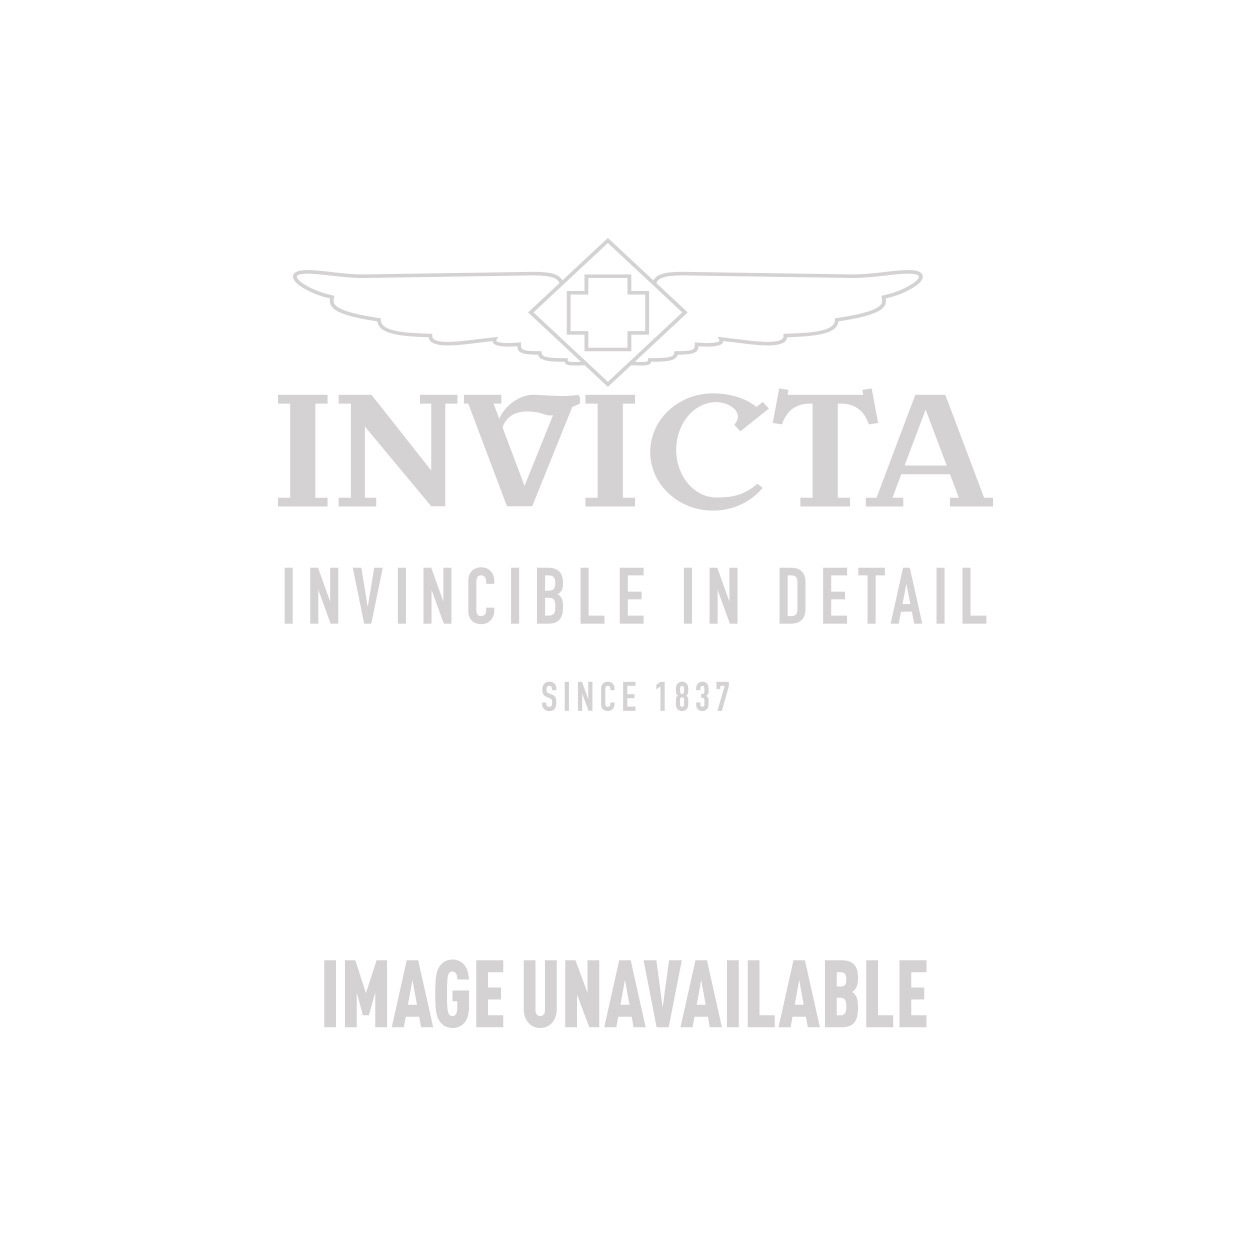 Invicta Pro Diver Watch (Mod: 9937OB) | Invicta Watches